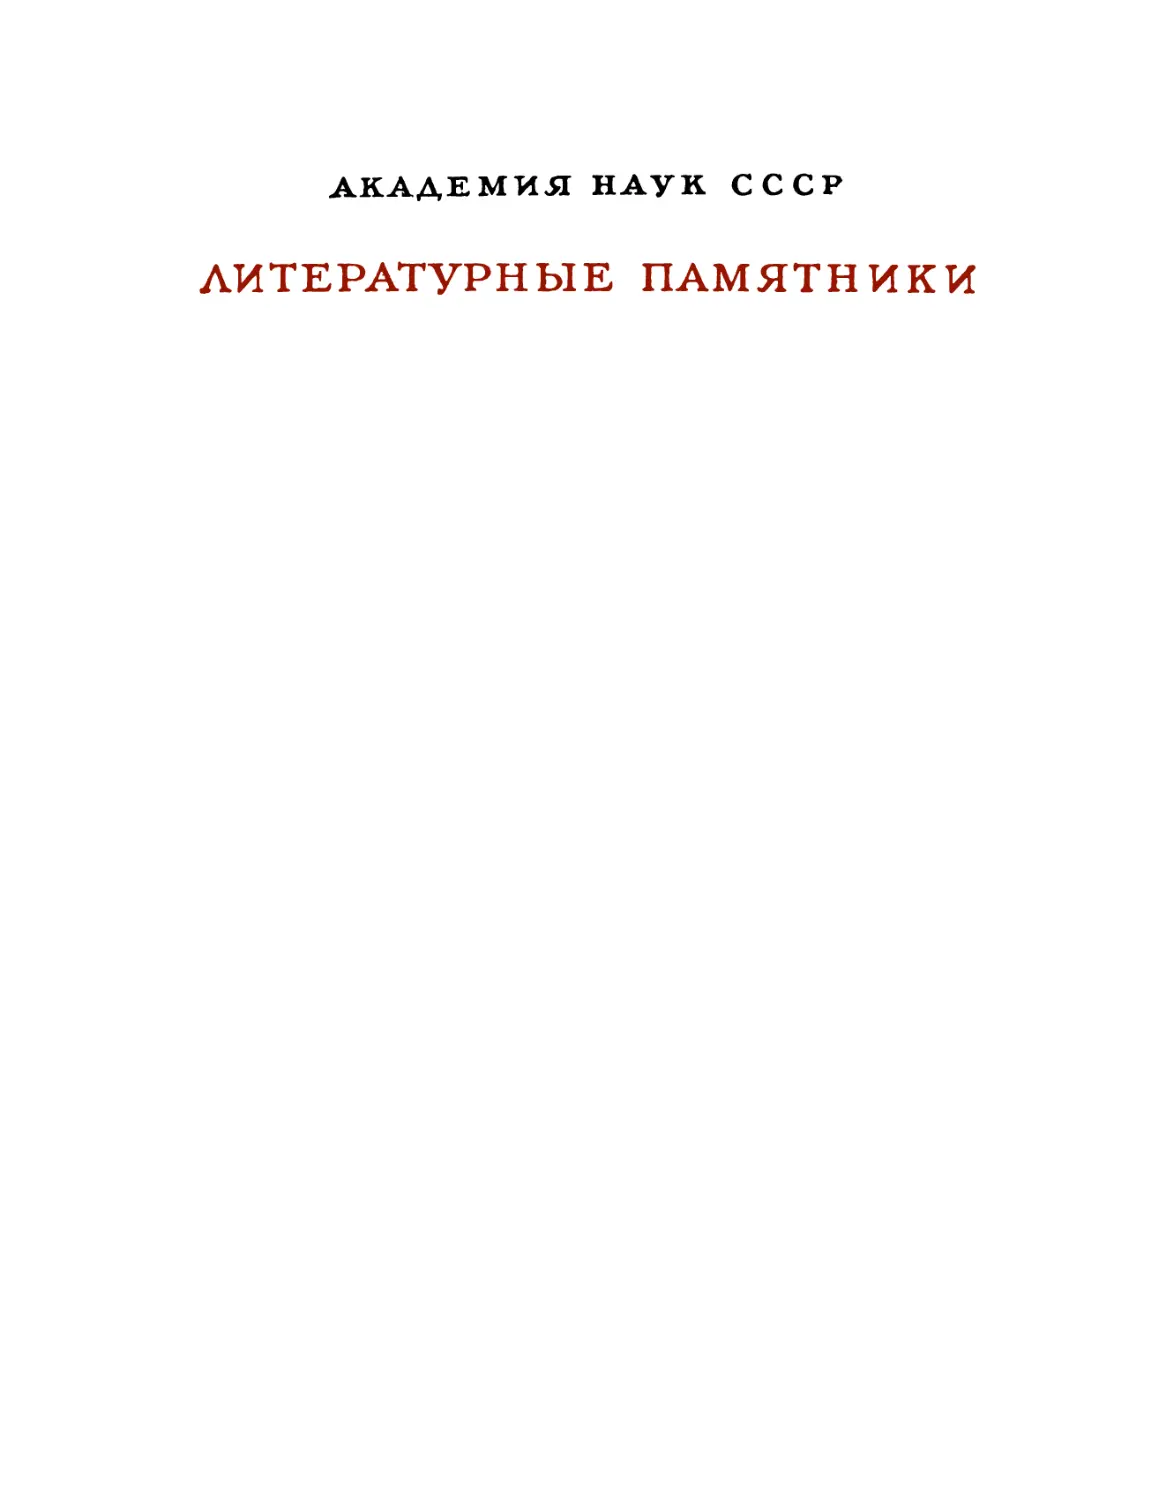 Плутарх. Сравнительные жизнеописания в 3-х томах. III – 1964